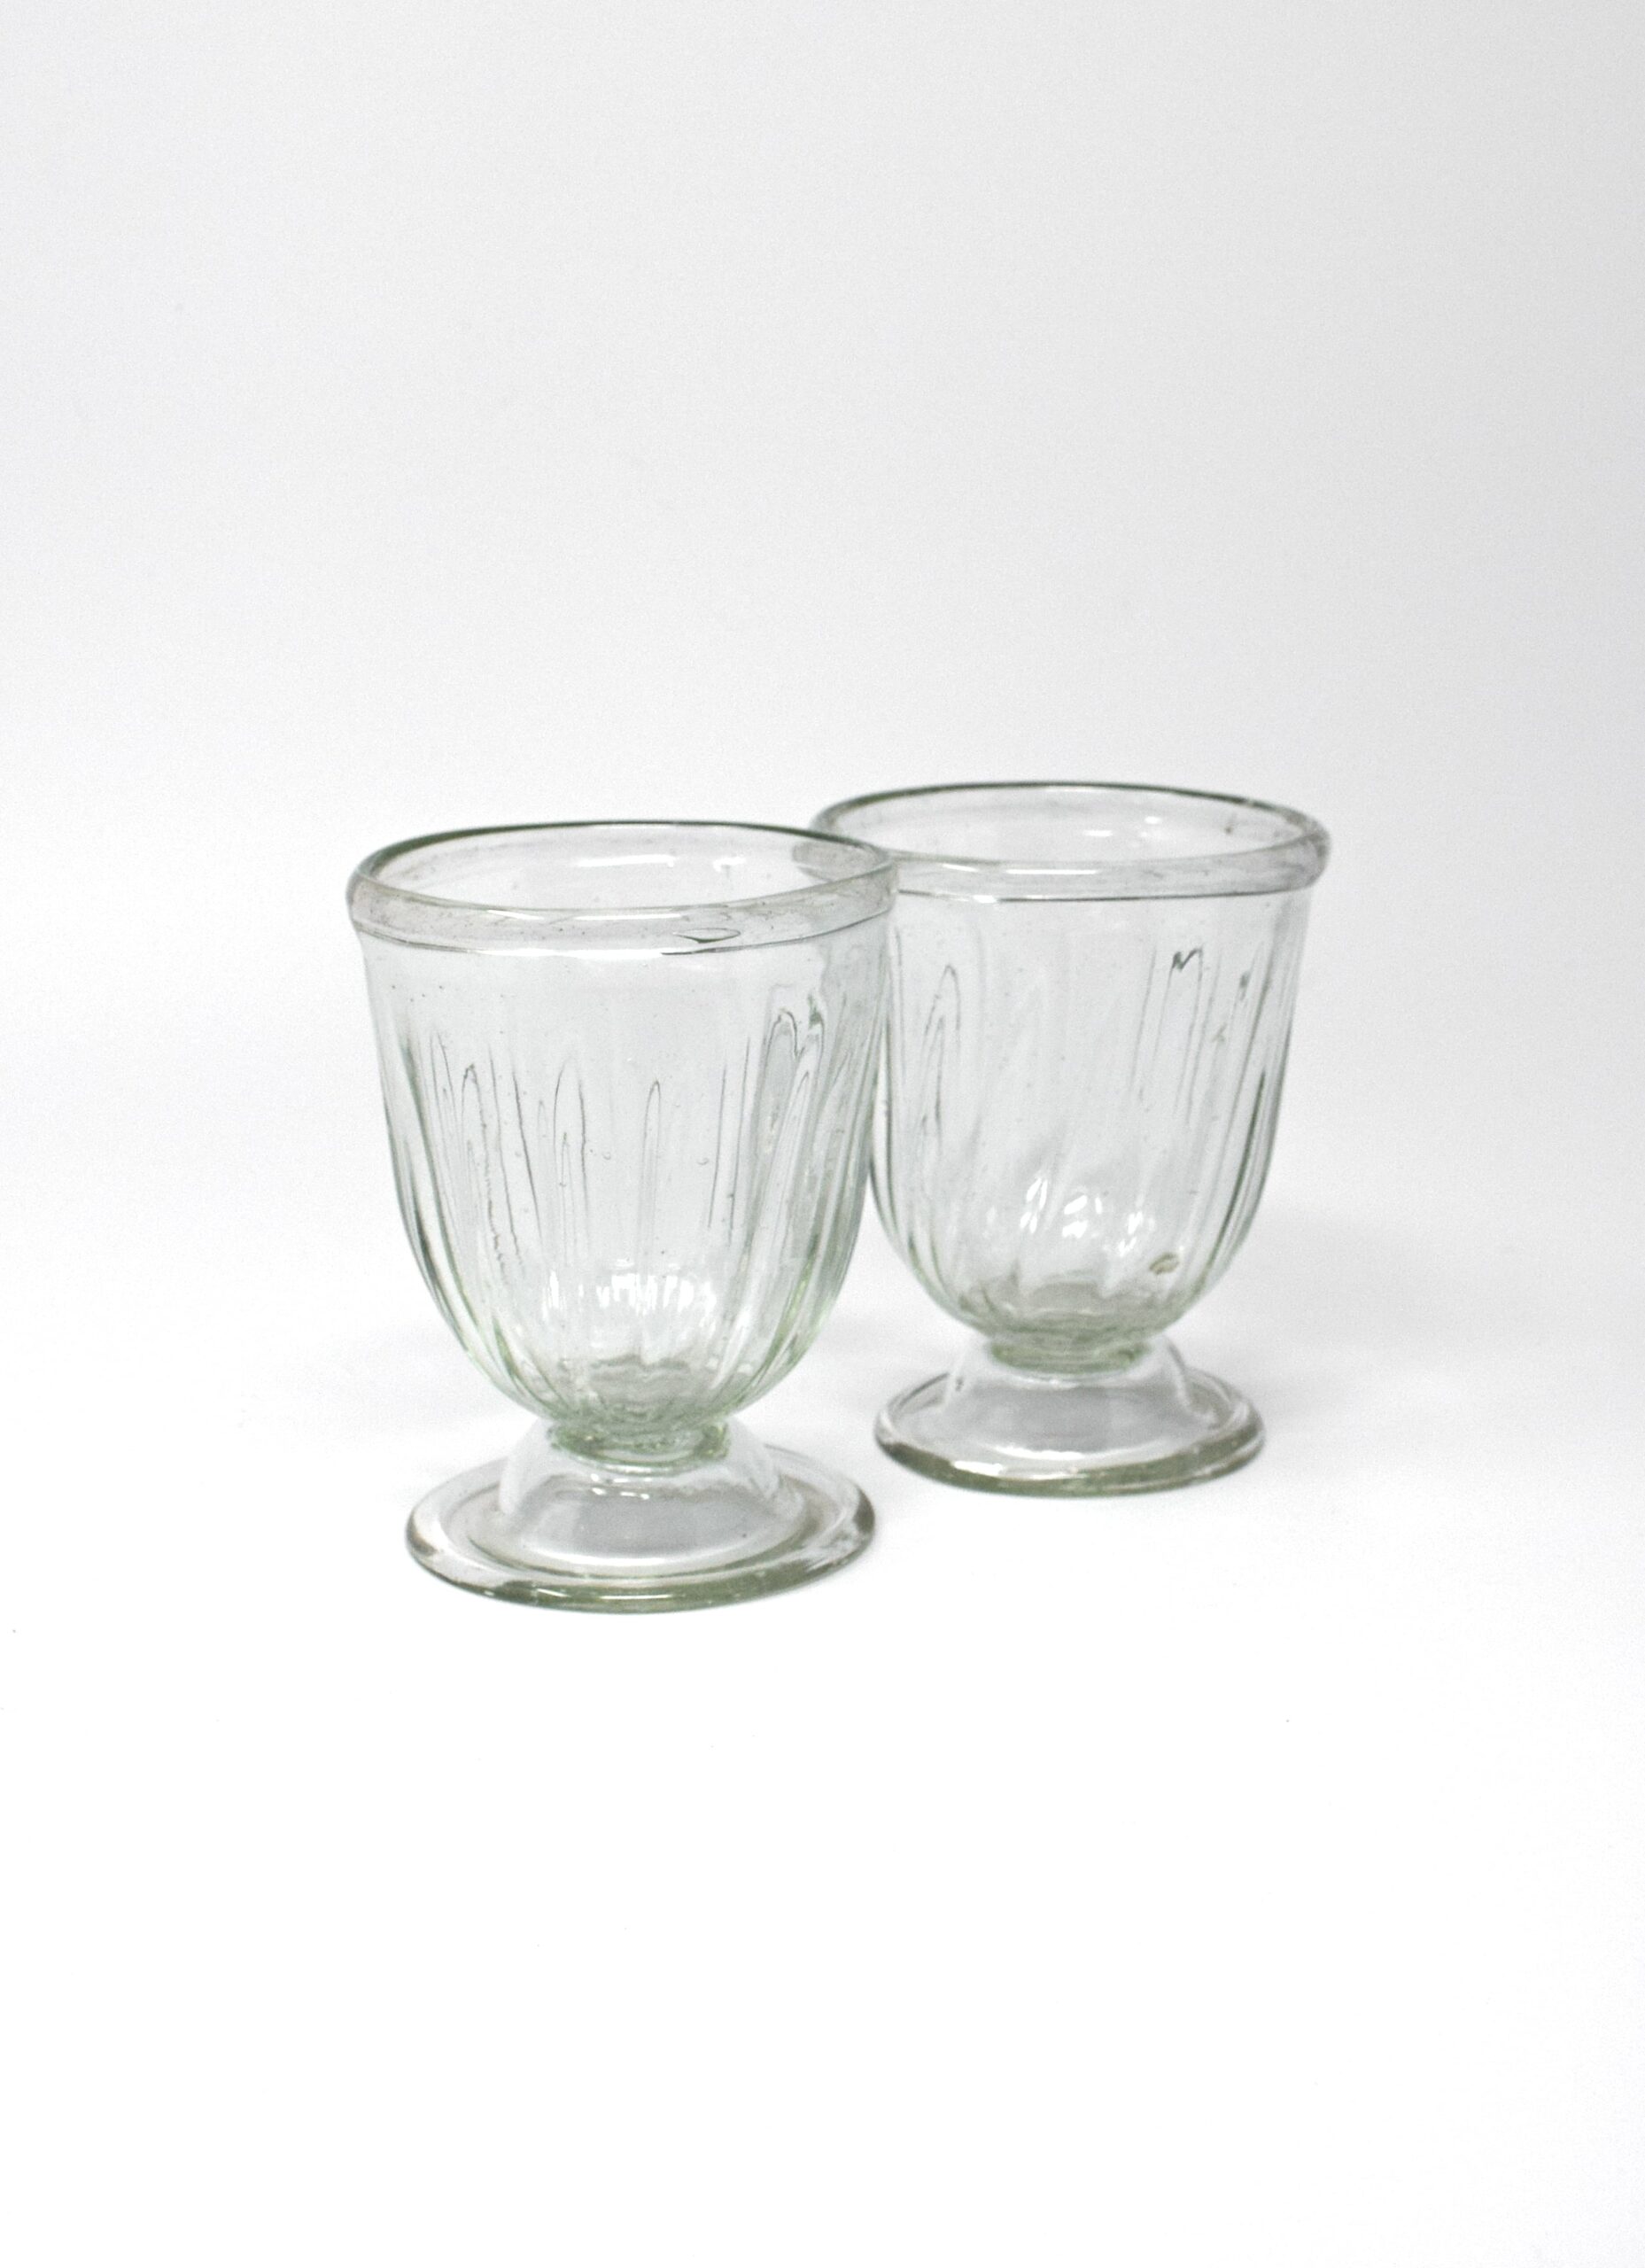 La Soufflerie - Handblown glass - Vino Venezia - Transparent